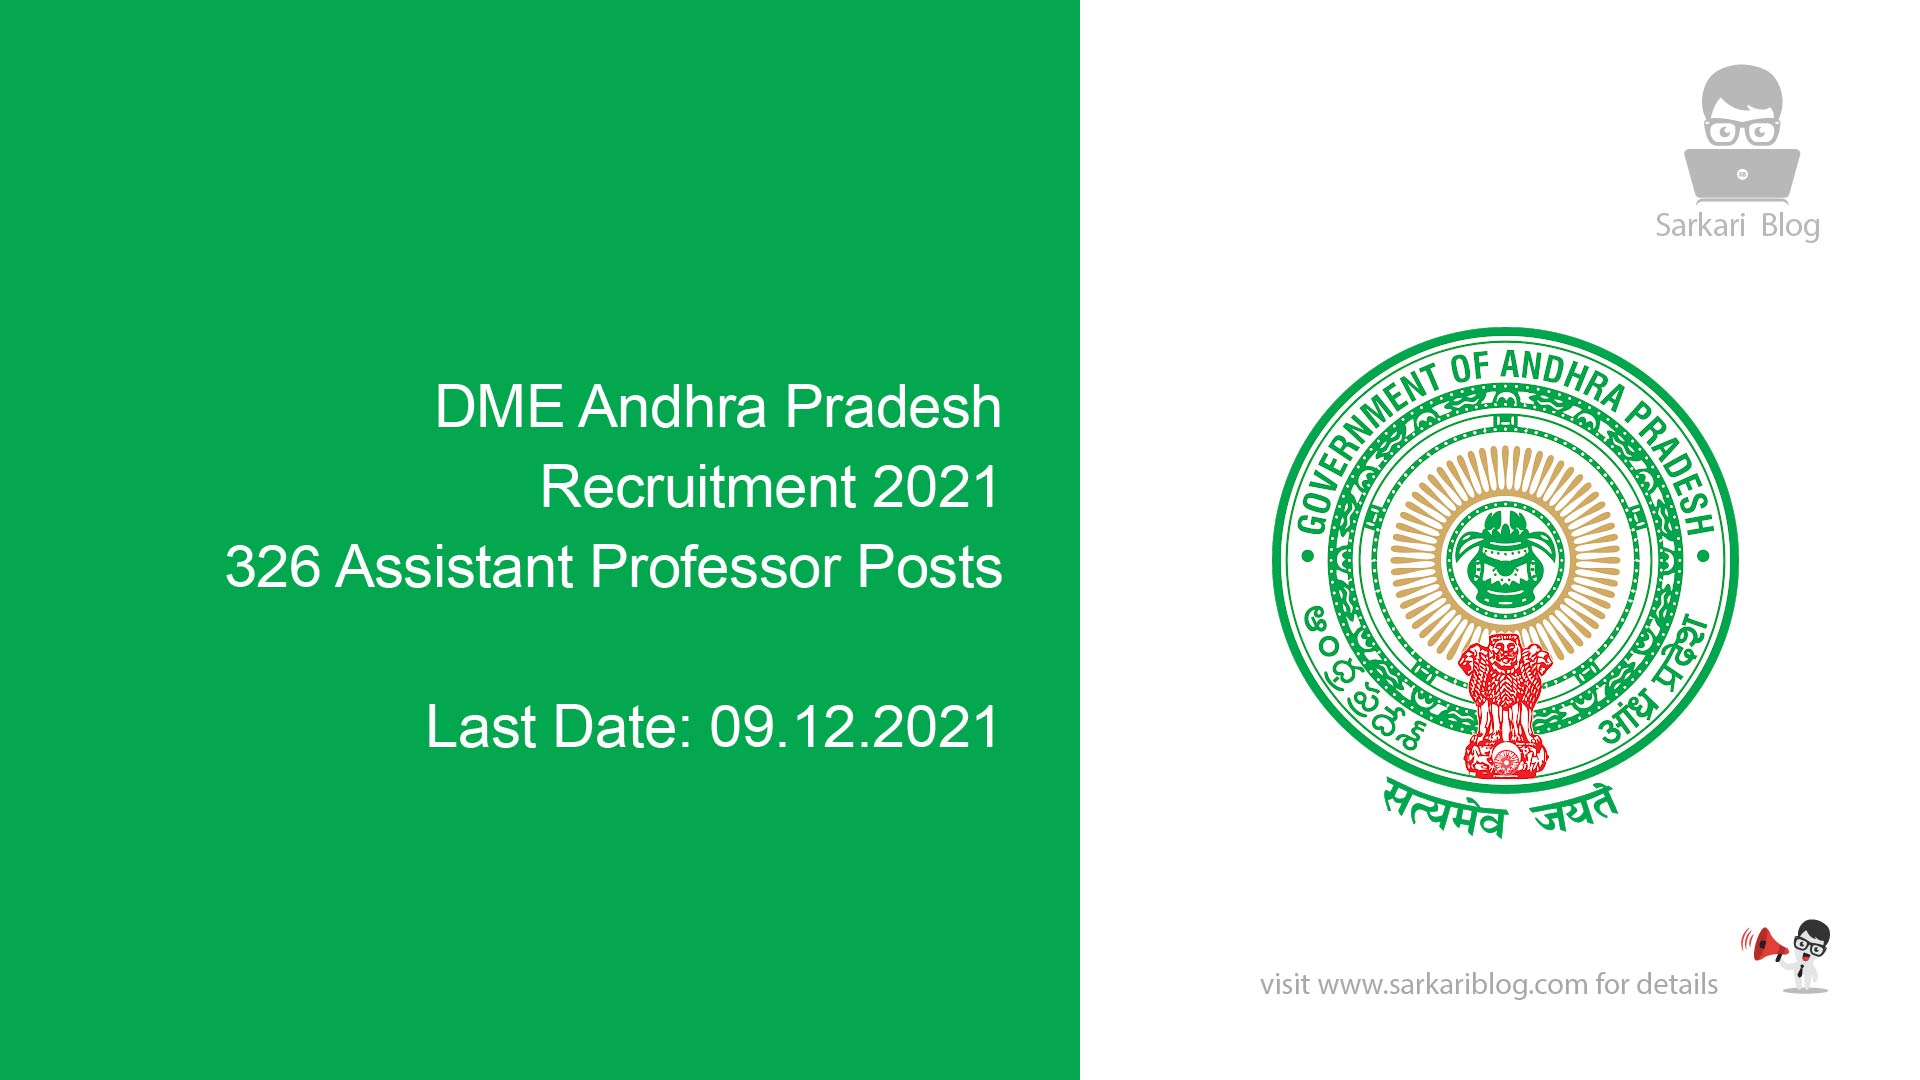 DME Andhra Pradesh Recruitment 2021